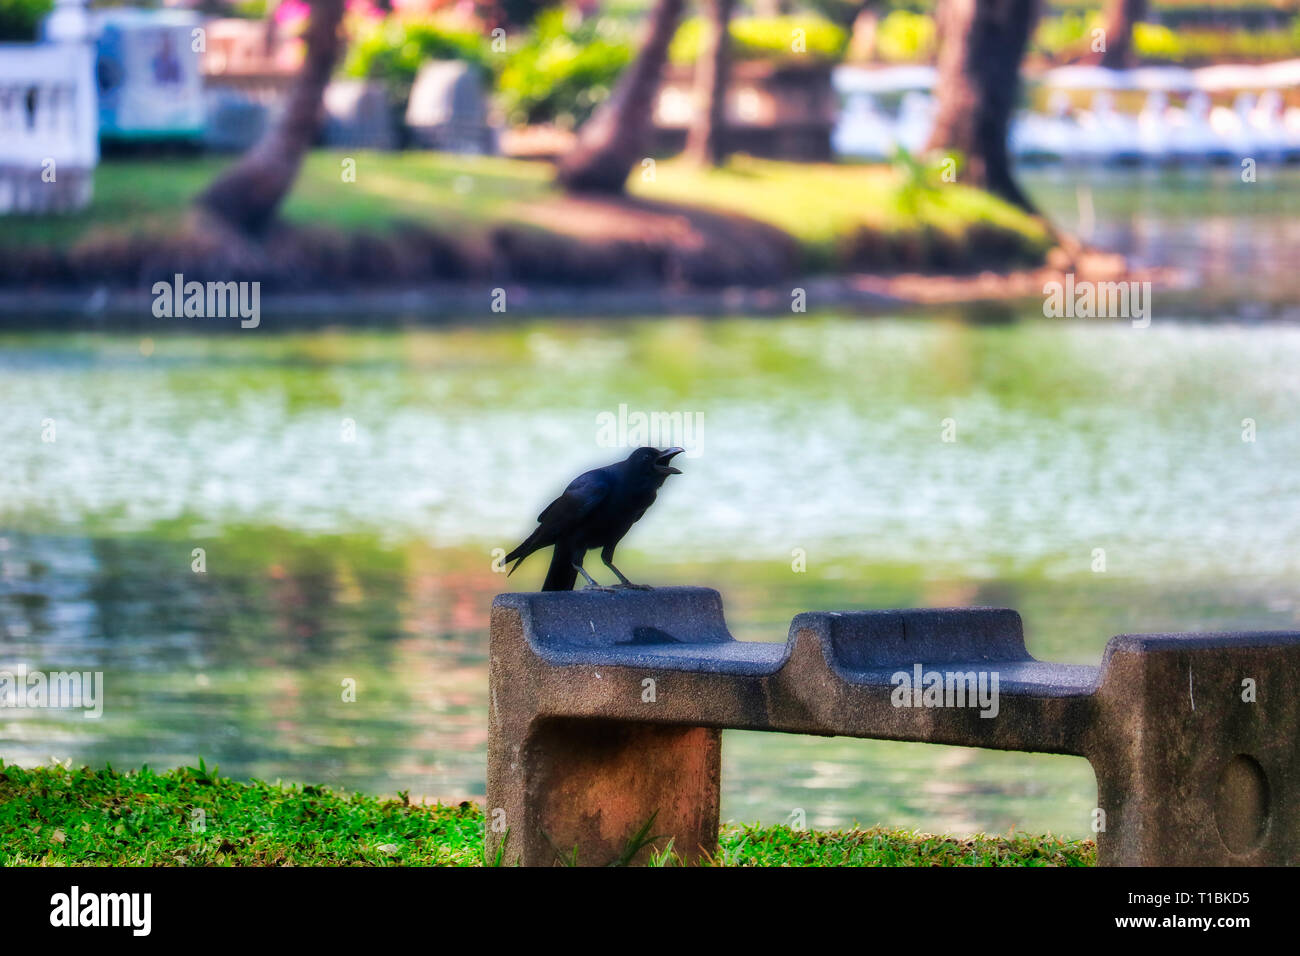 Questa unica immagine mostra un bel black raven. Questo grande uccello foto è stata scattata nel parco Lumpini di Bangkok. Foto Stock